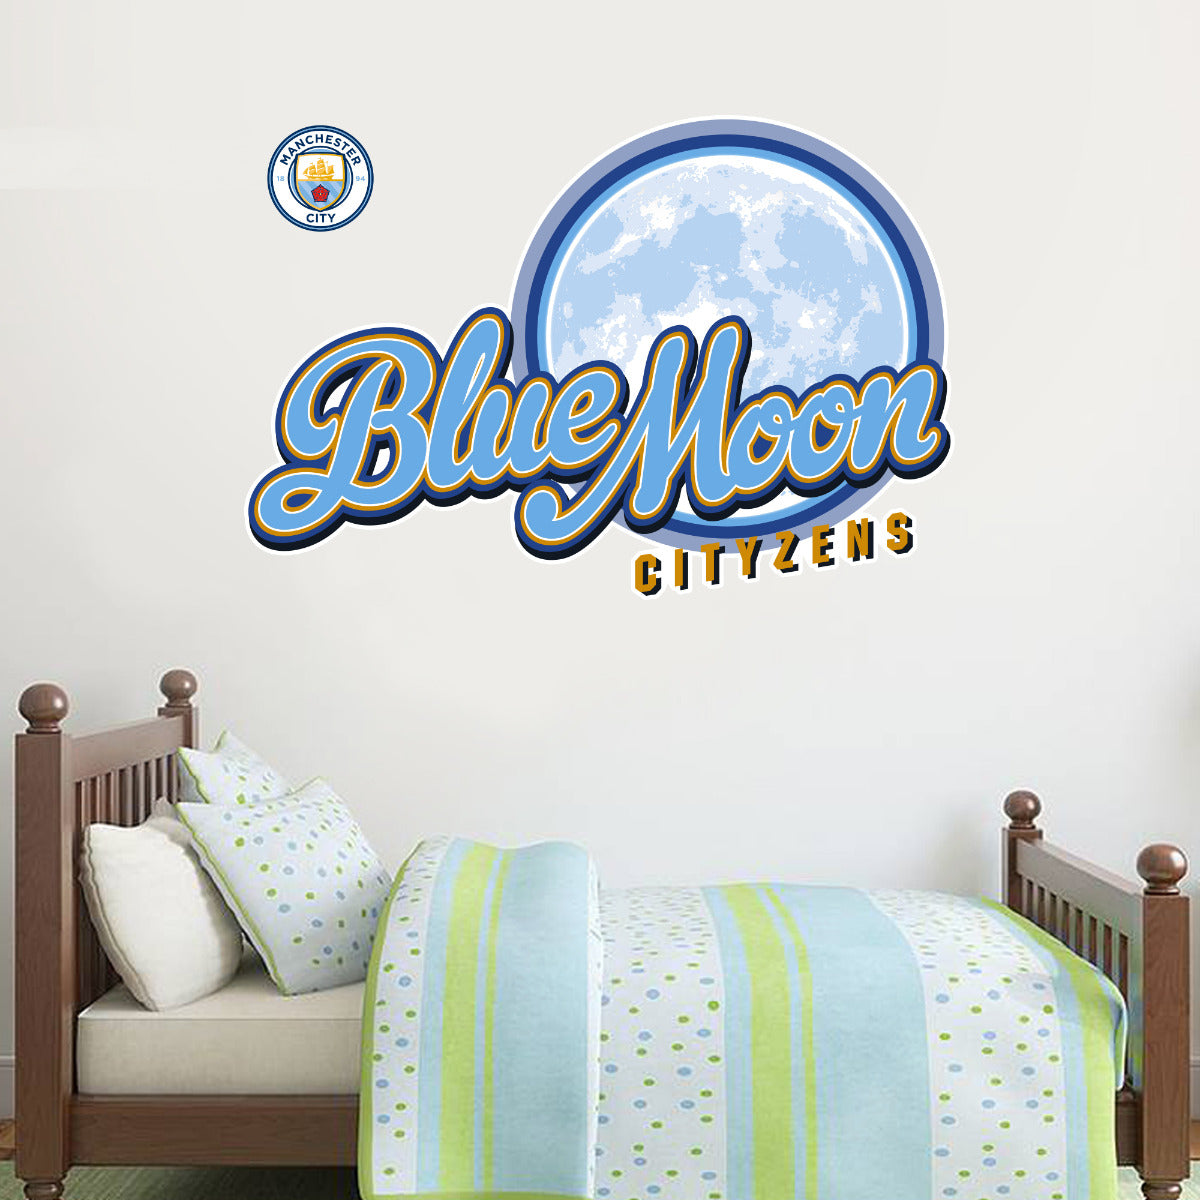 Manchester City Blue Moon Cityzens Wall Sticker